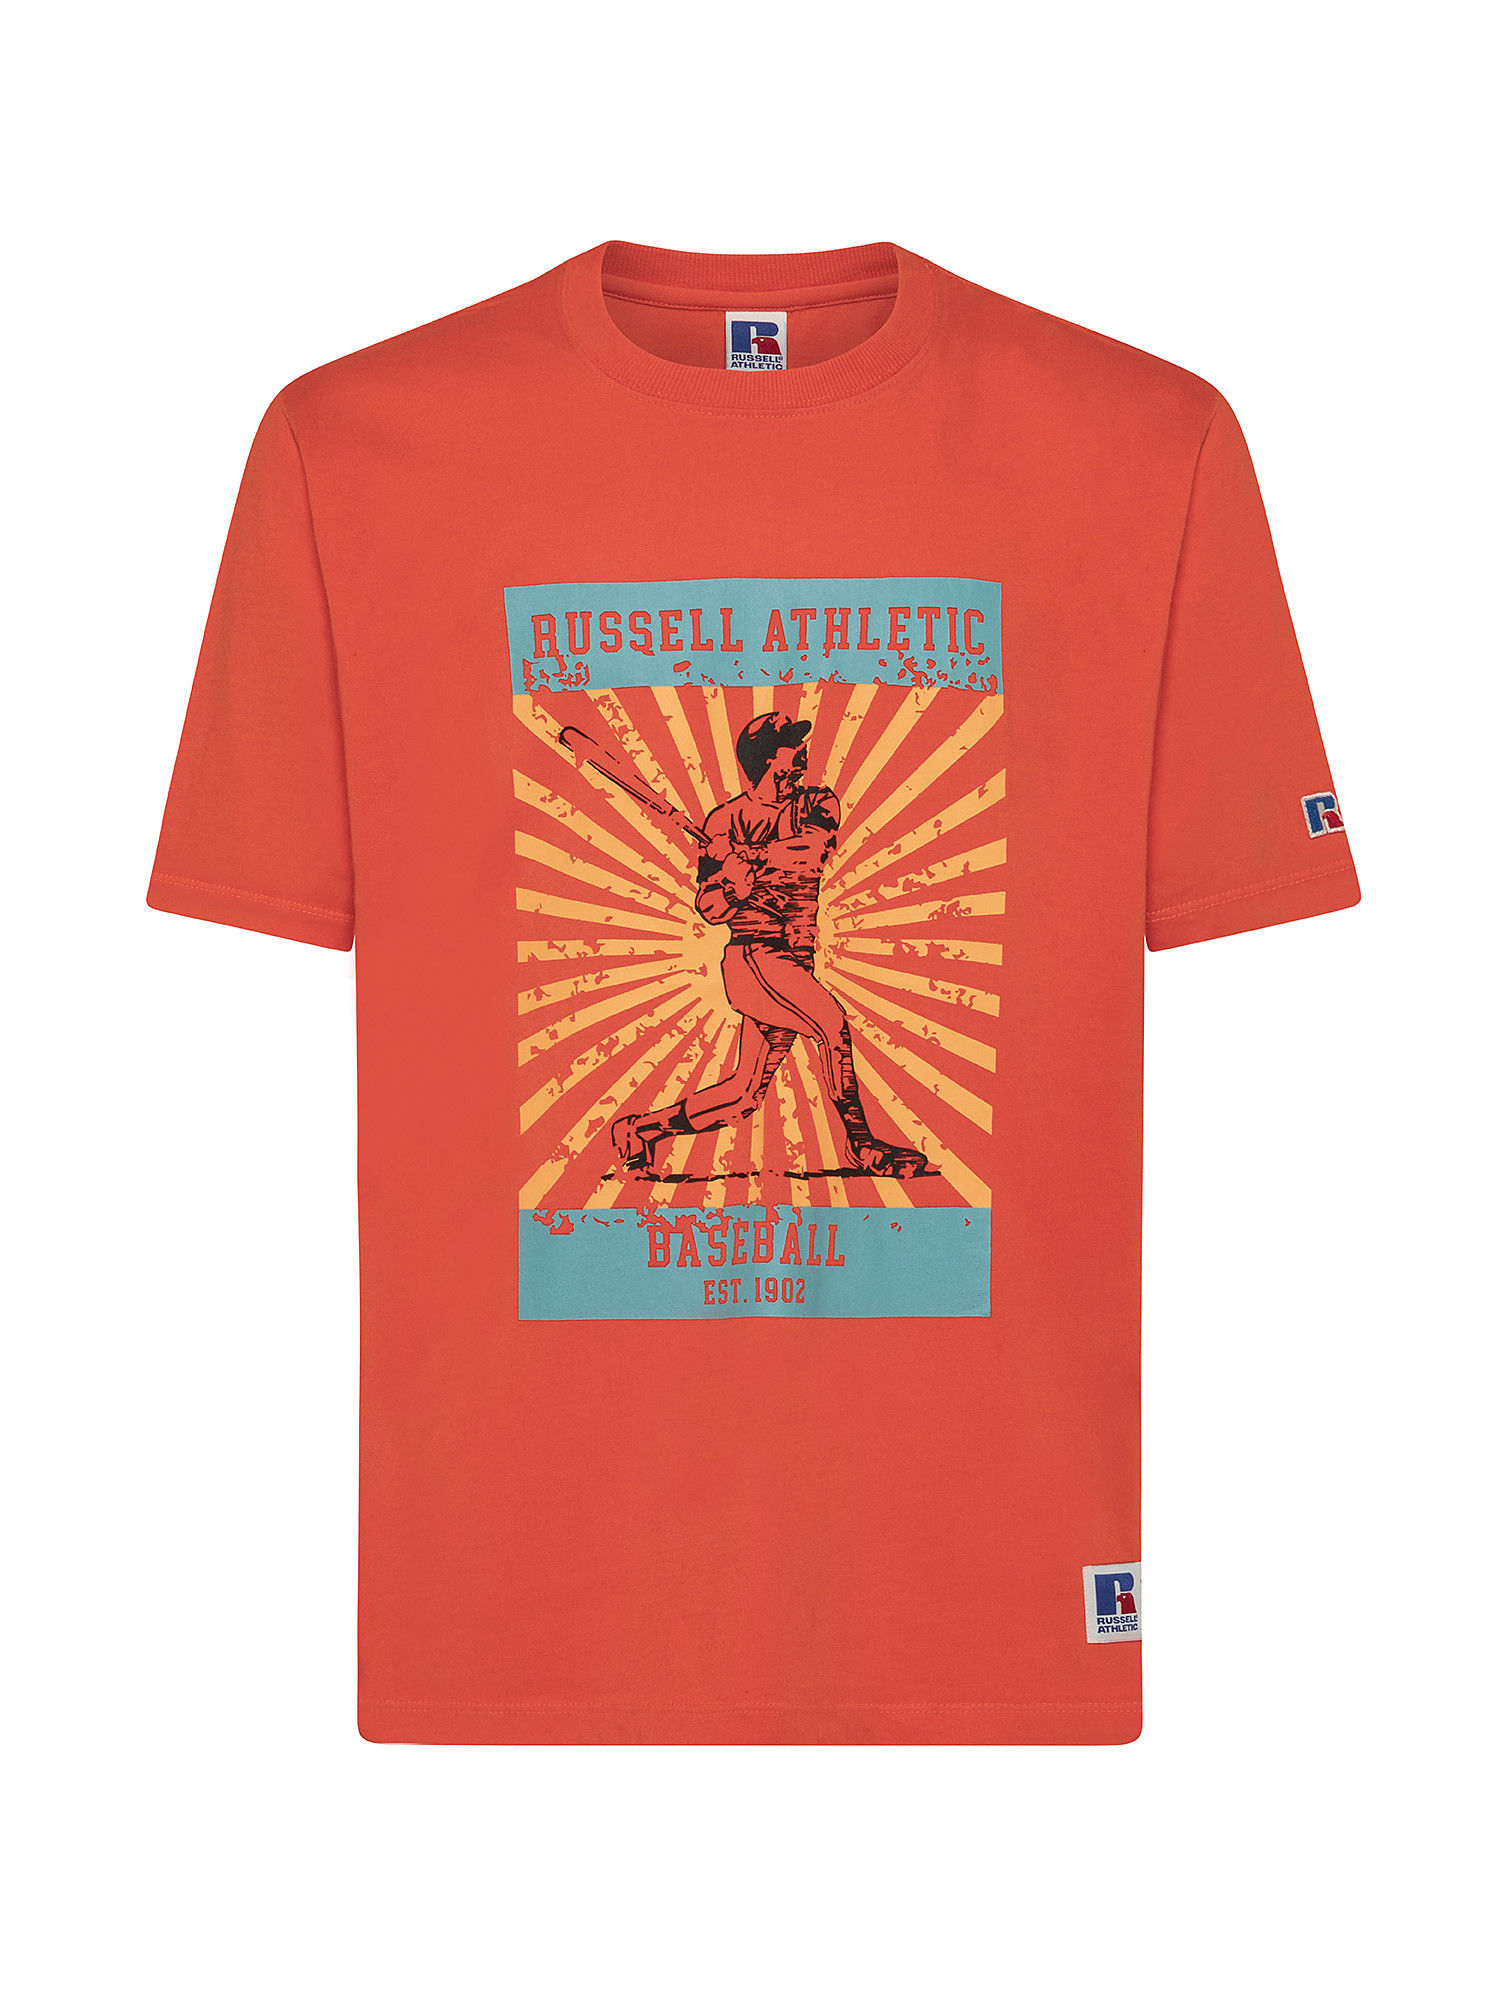 Baseball Ted T-Shirt, Orange, large image number 0